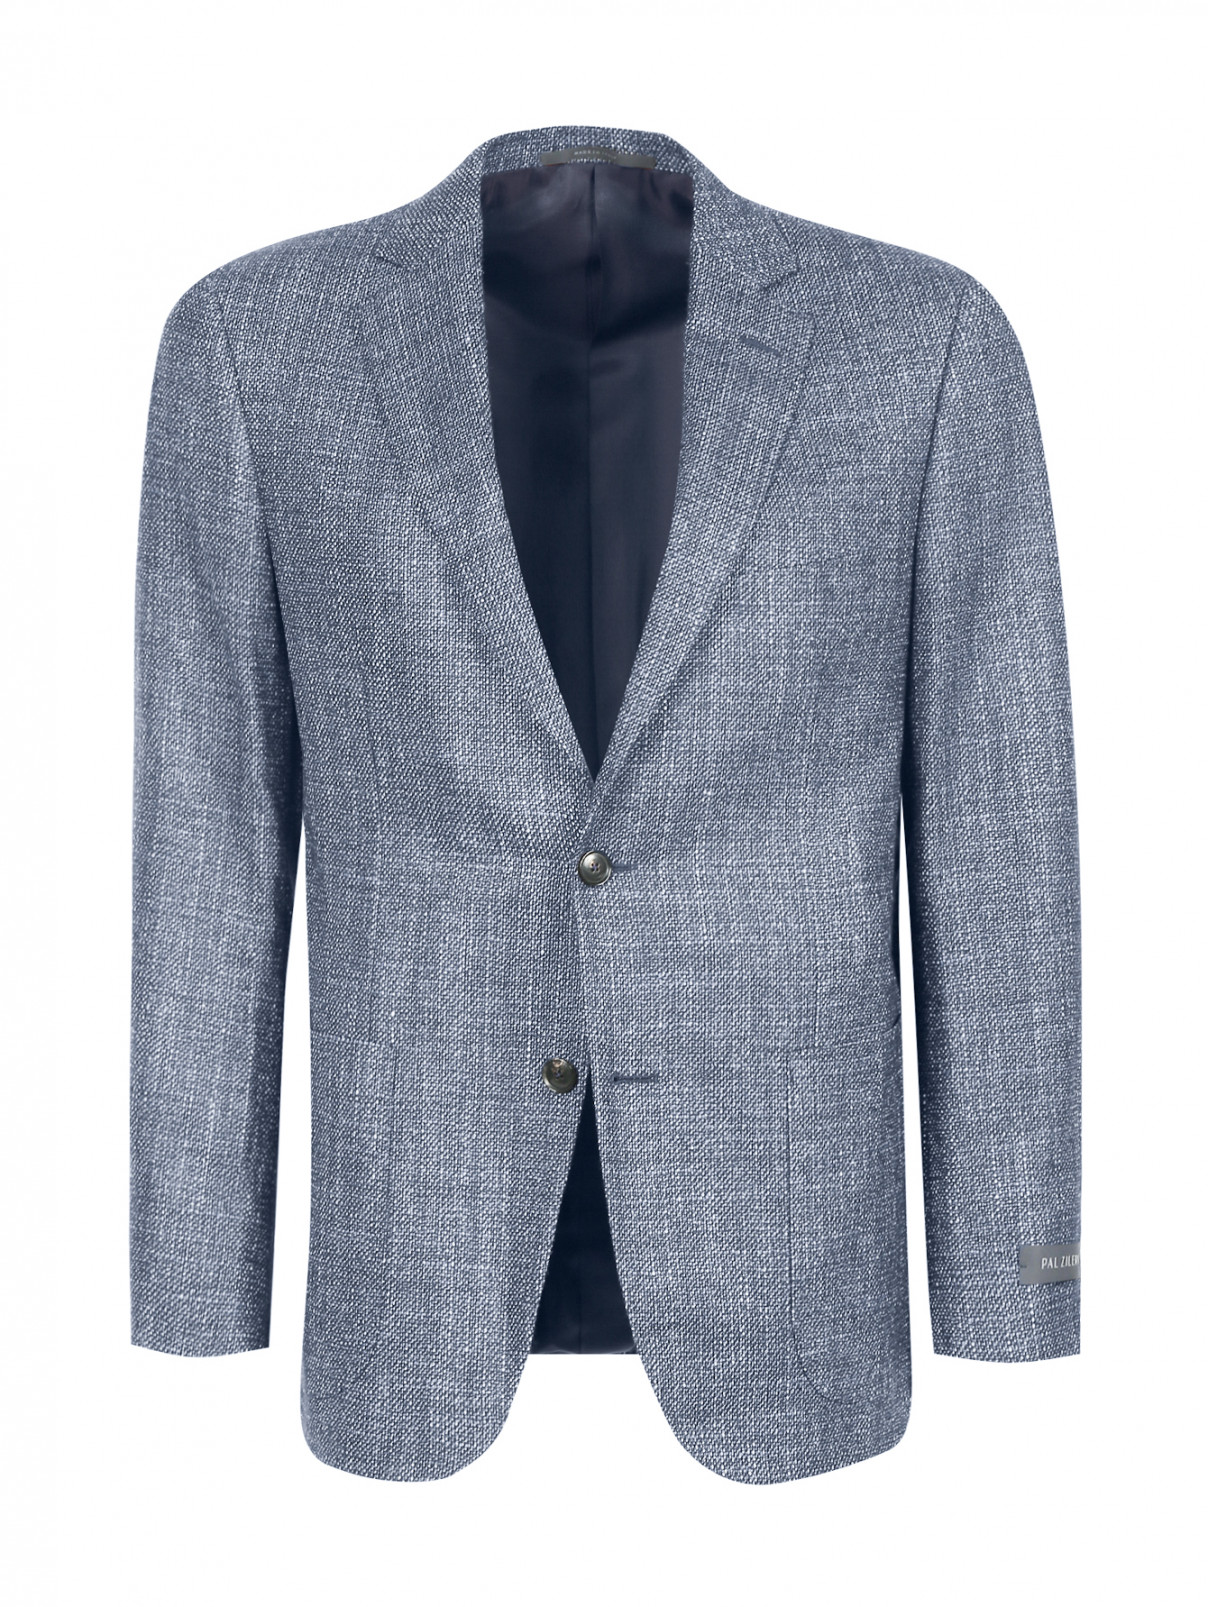 Пиджак однобортный из шелка и шерсти Pal Zileri  –  Общий вид  – Цвет:  Синий